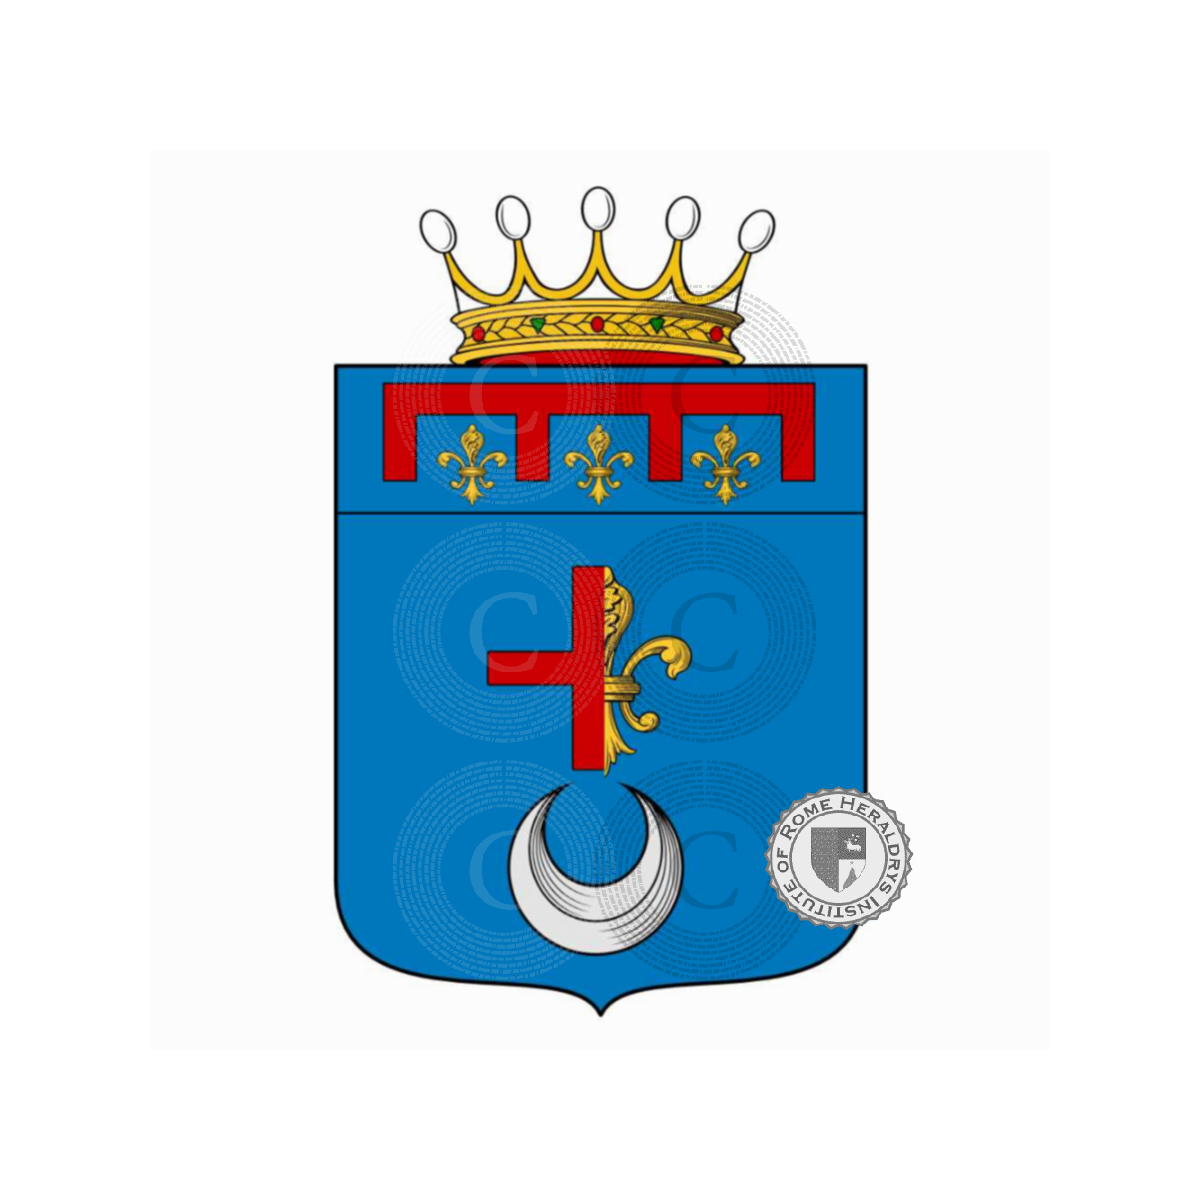 Stemma della famigliada Santa Croce, da Santa Croce,Santa Croce,Santacroce Publicola